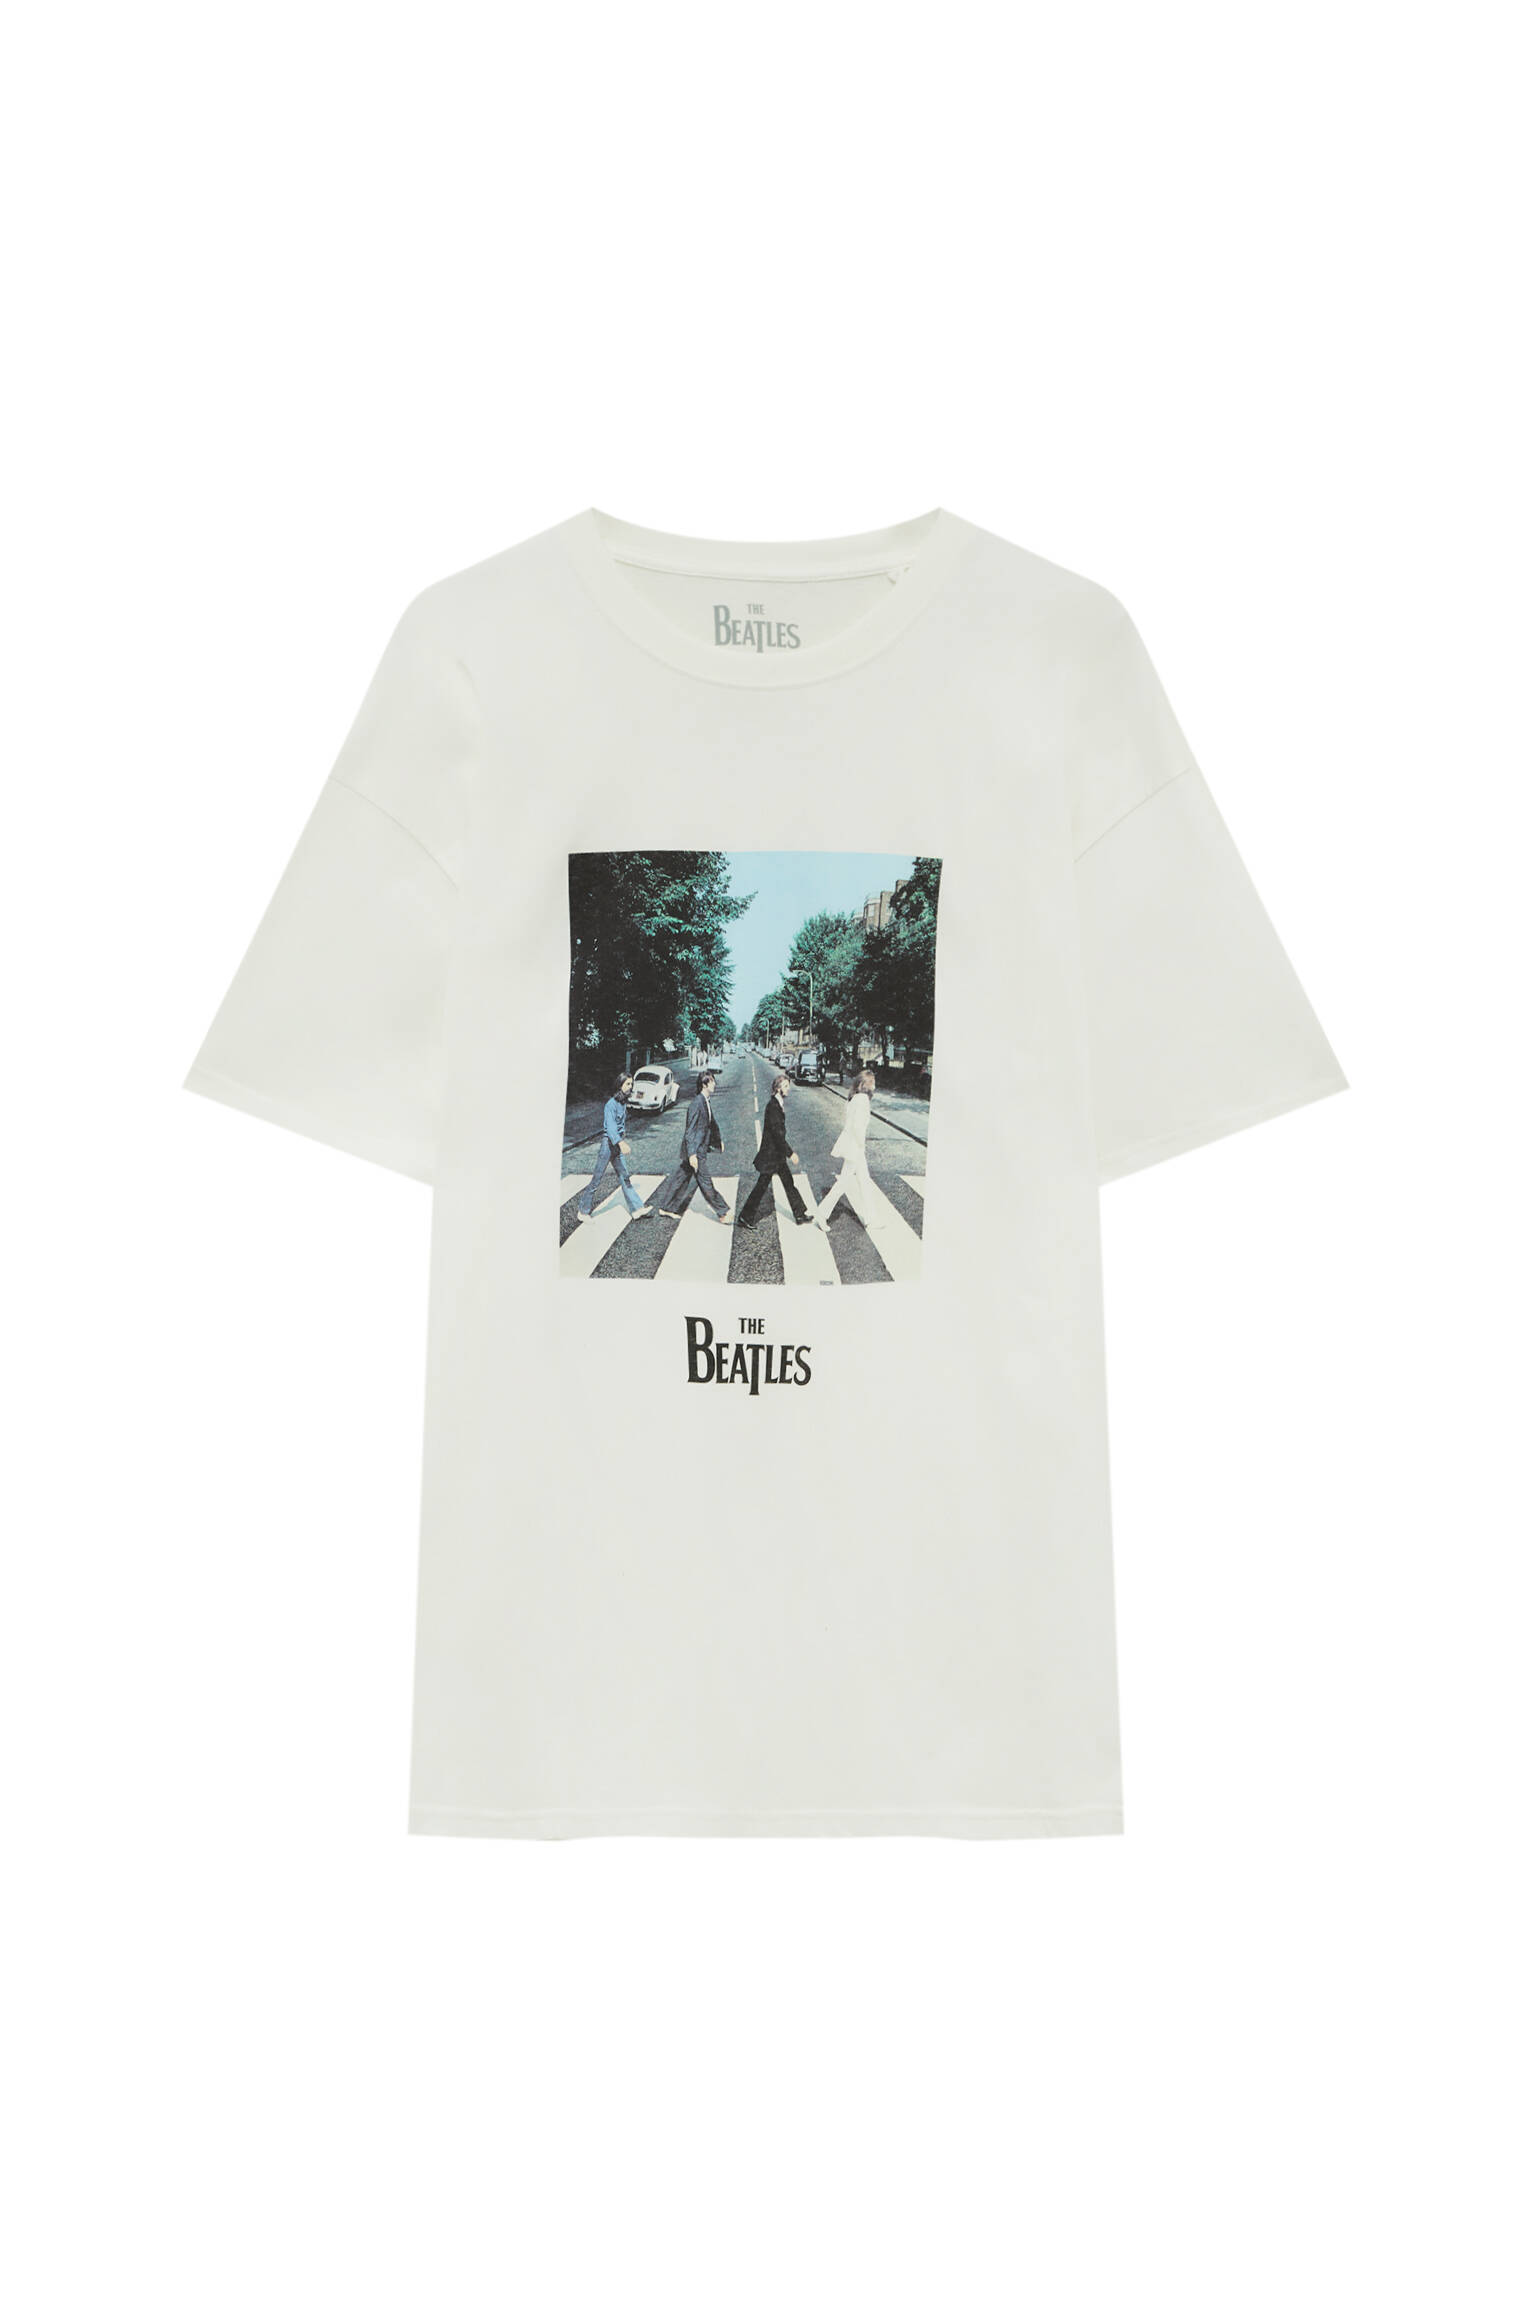 Pull&bear Homme T-shirt à Manches Courtes, Col Rond Et Imprimé Abbey Road Des Beatles. Blanc CassÉ L